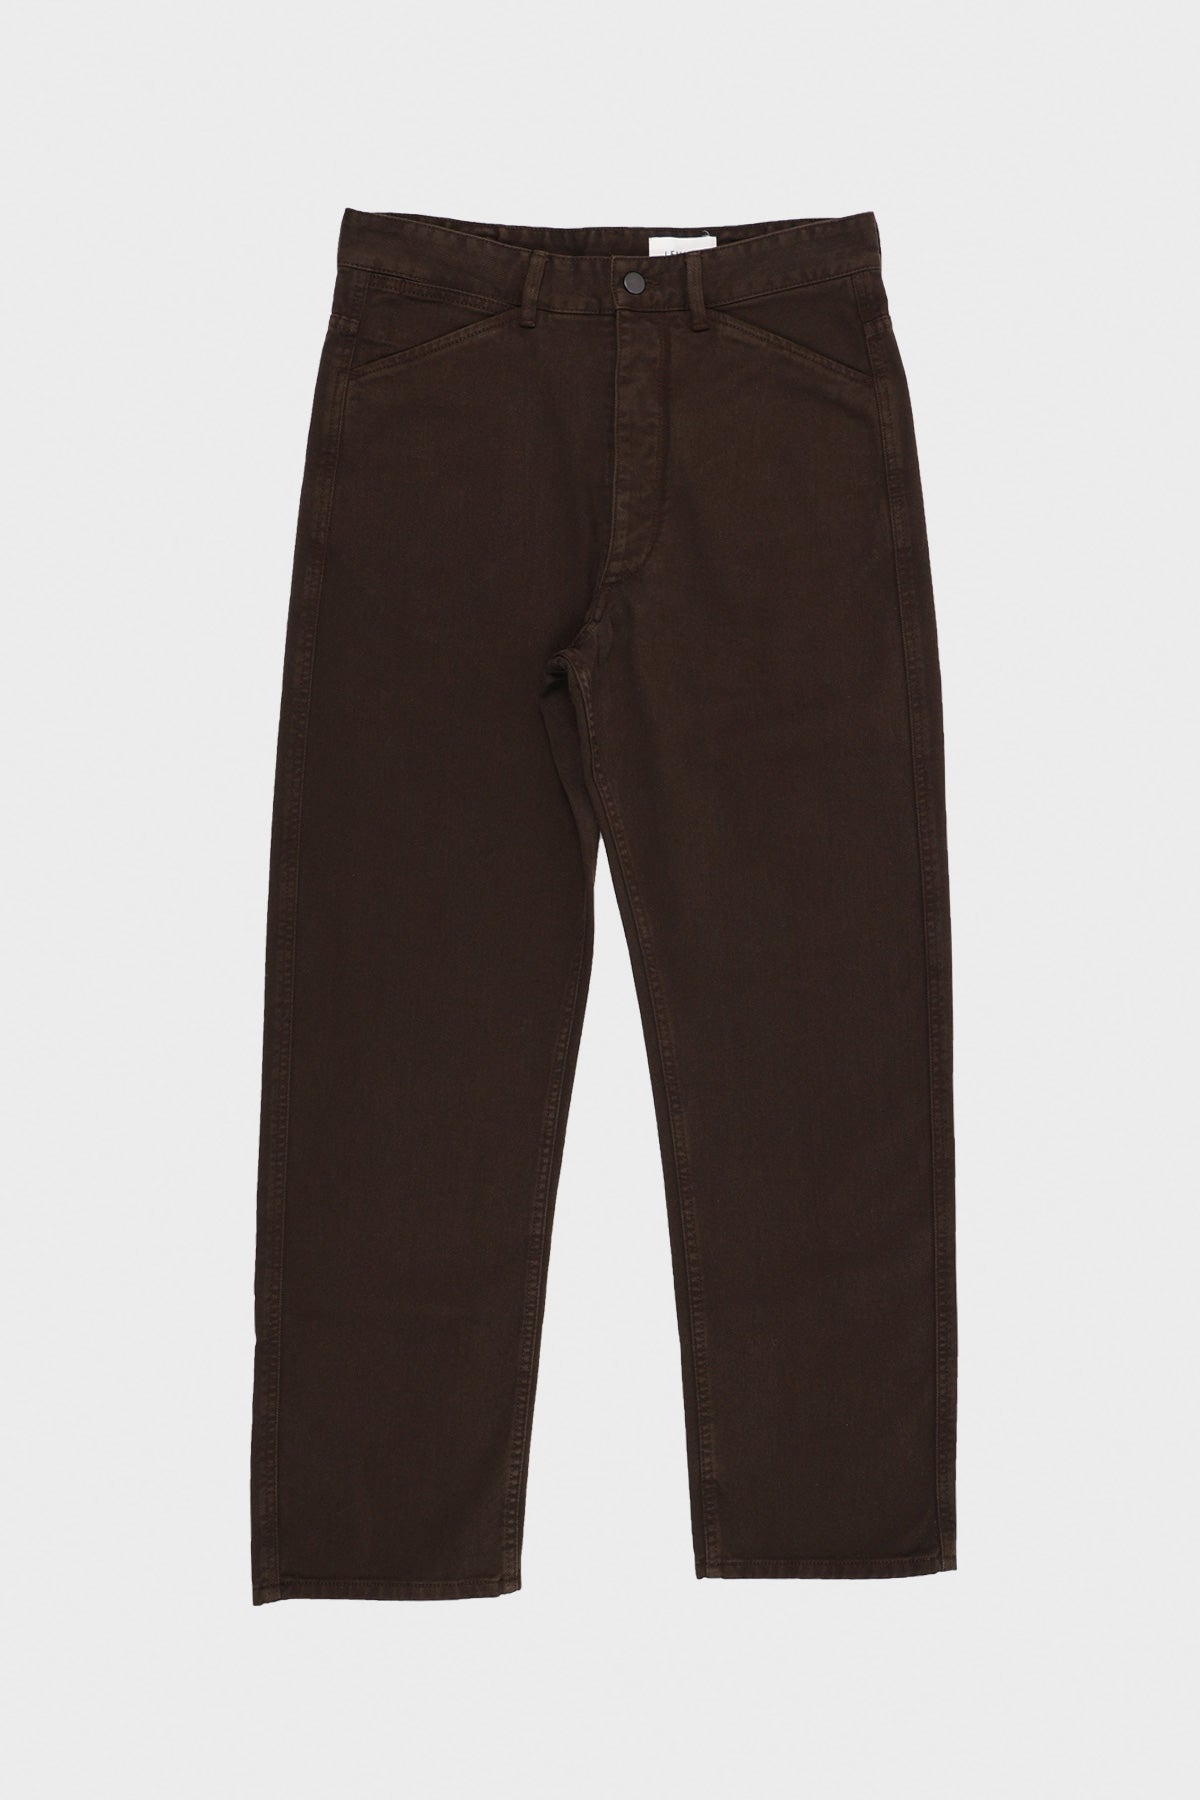 Lemaire Curved 5 Pocket Pants - Black